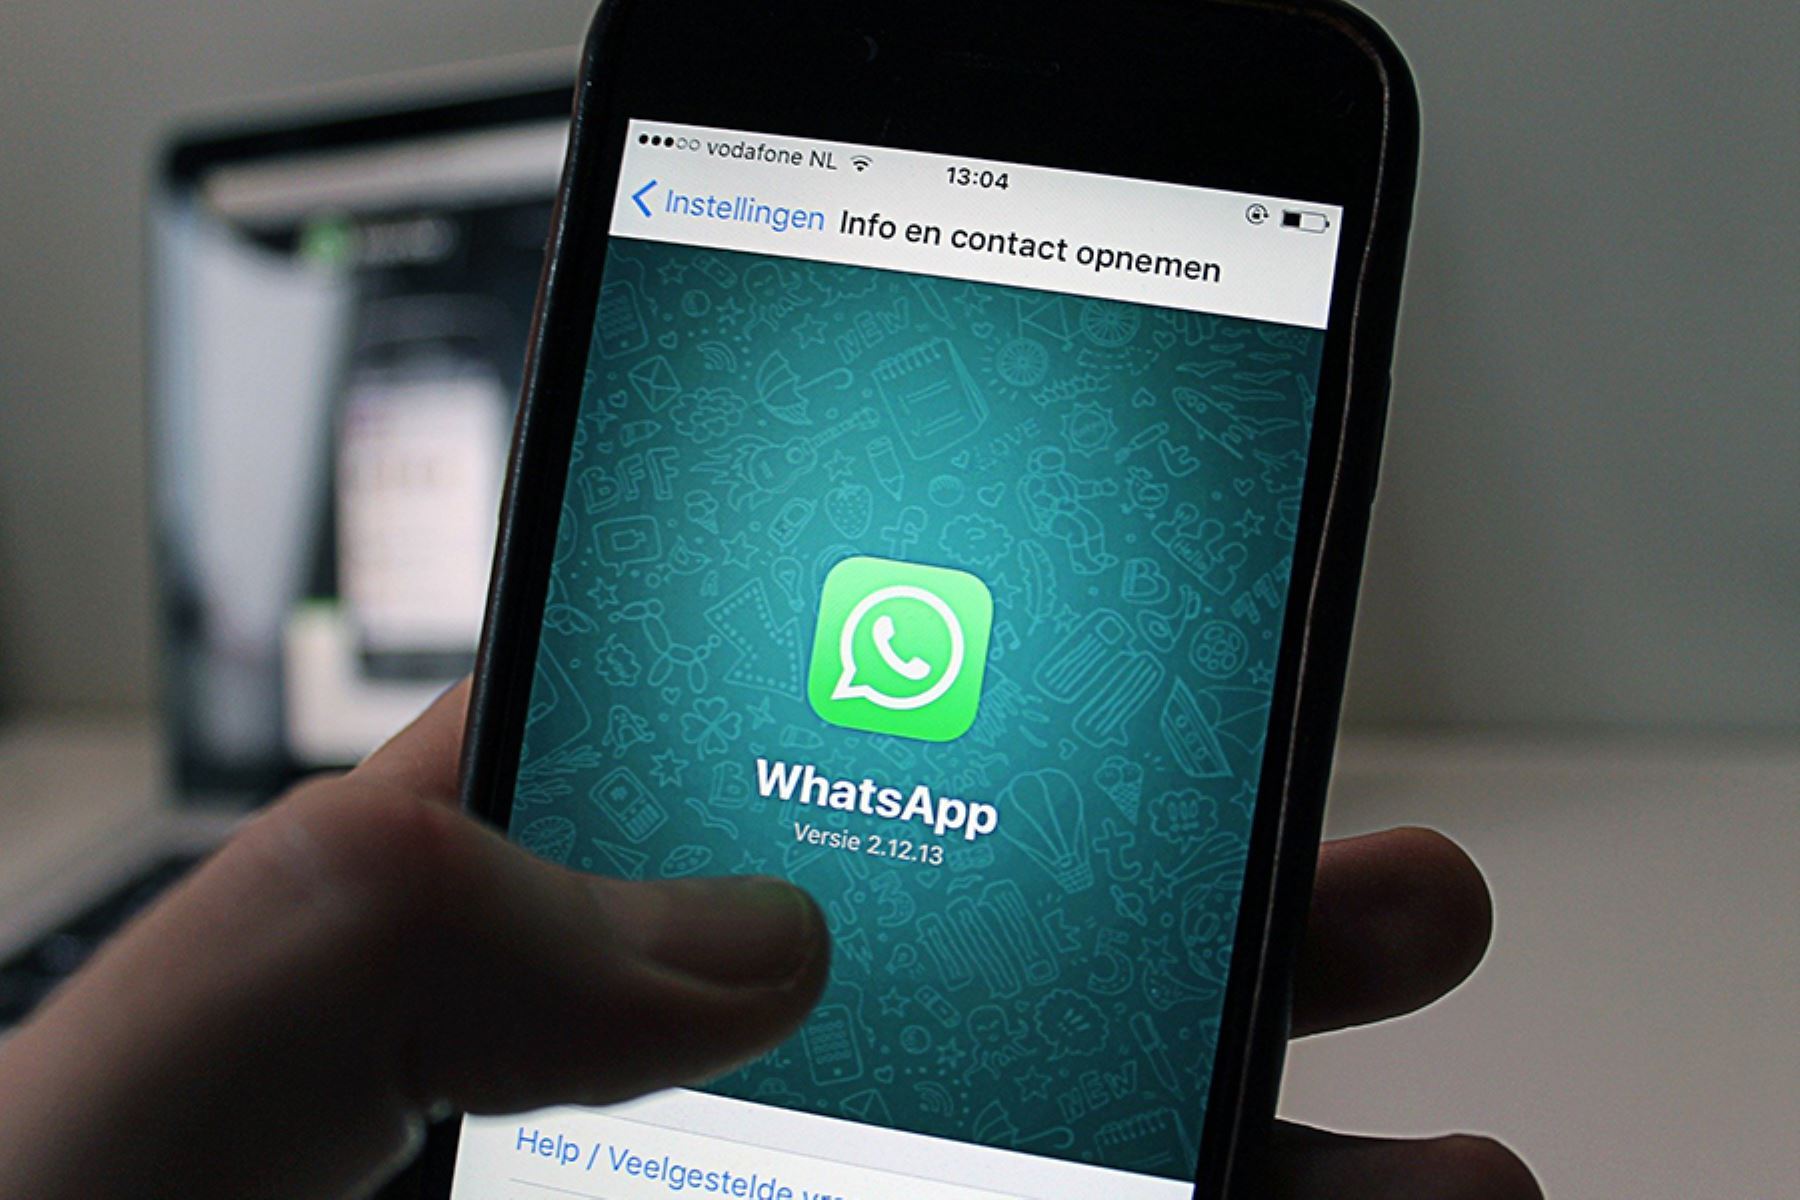 WhatsApp Business es una aplicación gratuita, disponible para Android y iOS, y diseñada específicamente para negocios pequeños.